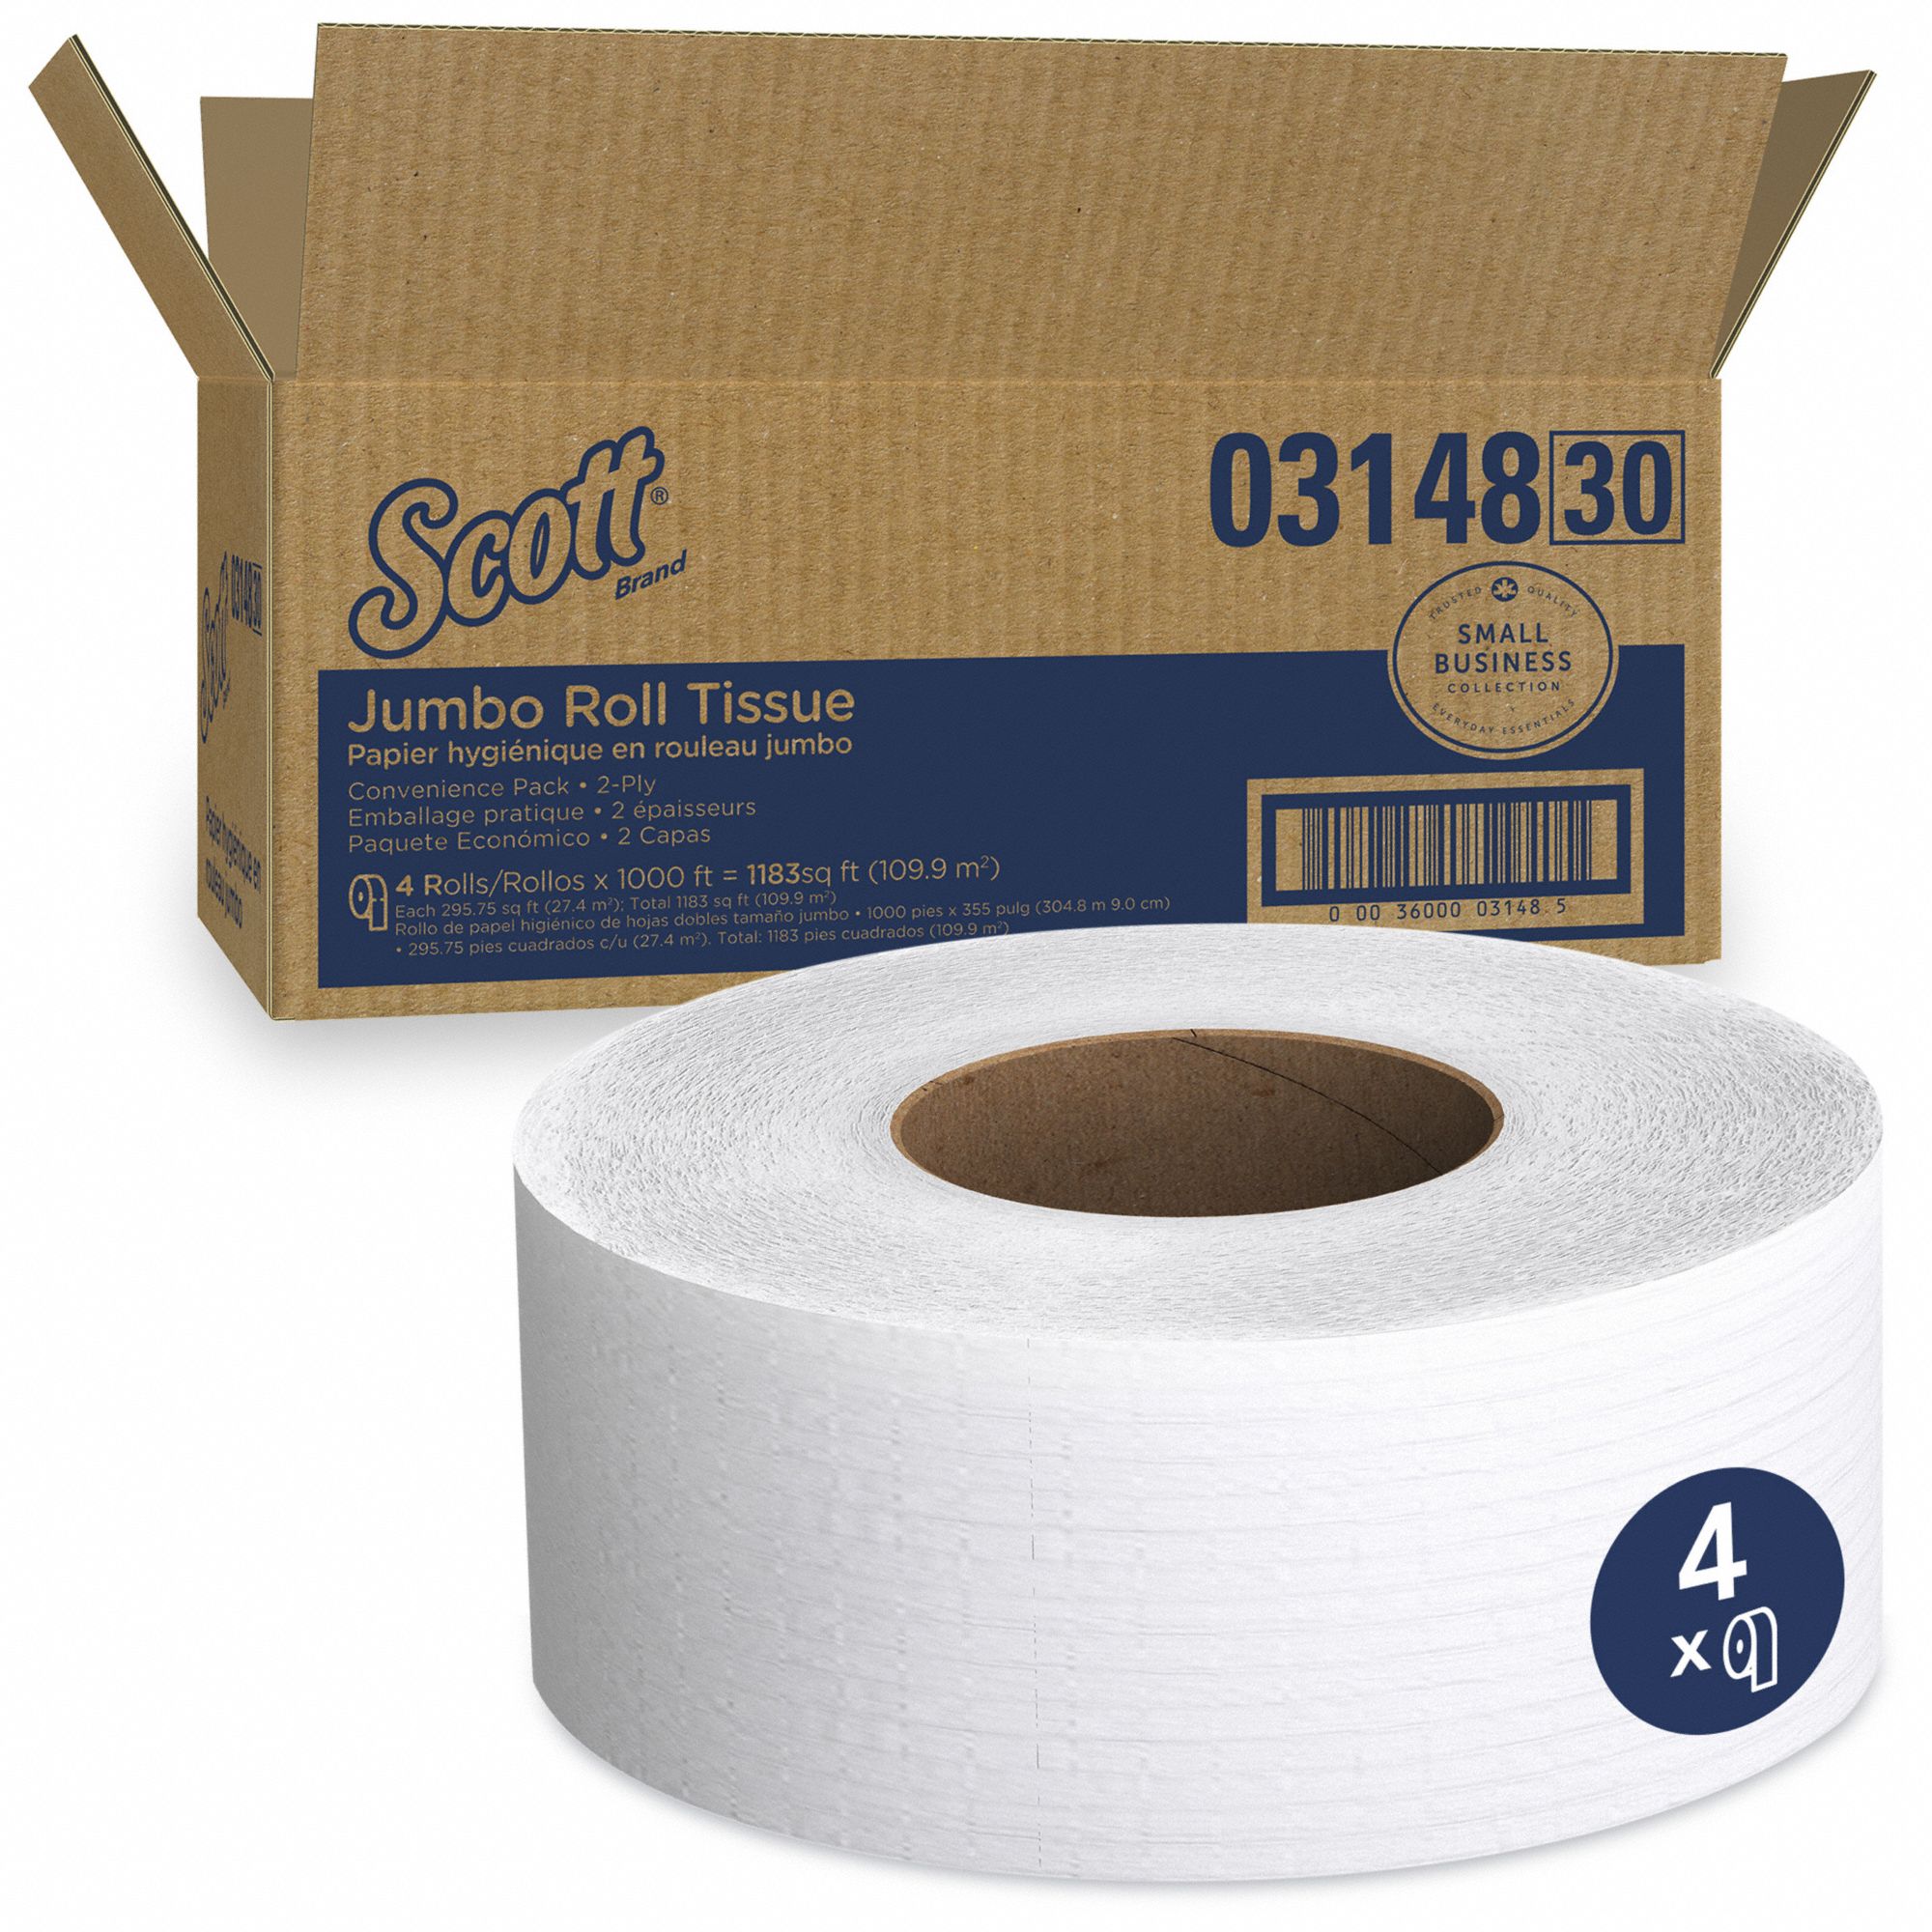 SCOTT BATHROOM TISSUE ROLL, JUMBO JR, 2-PLY, WHITE, 1000 FT X 3½ IN, 4 PK - Toilet  Paper - KMB03148